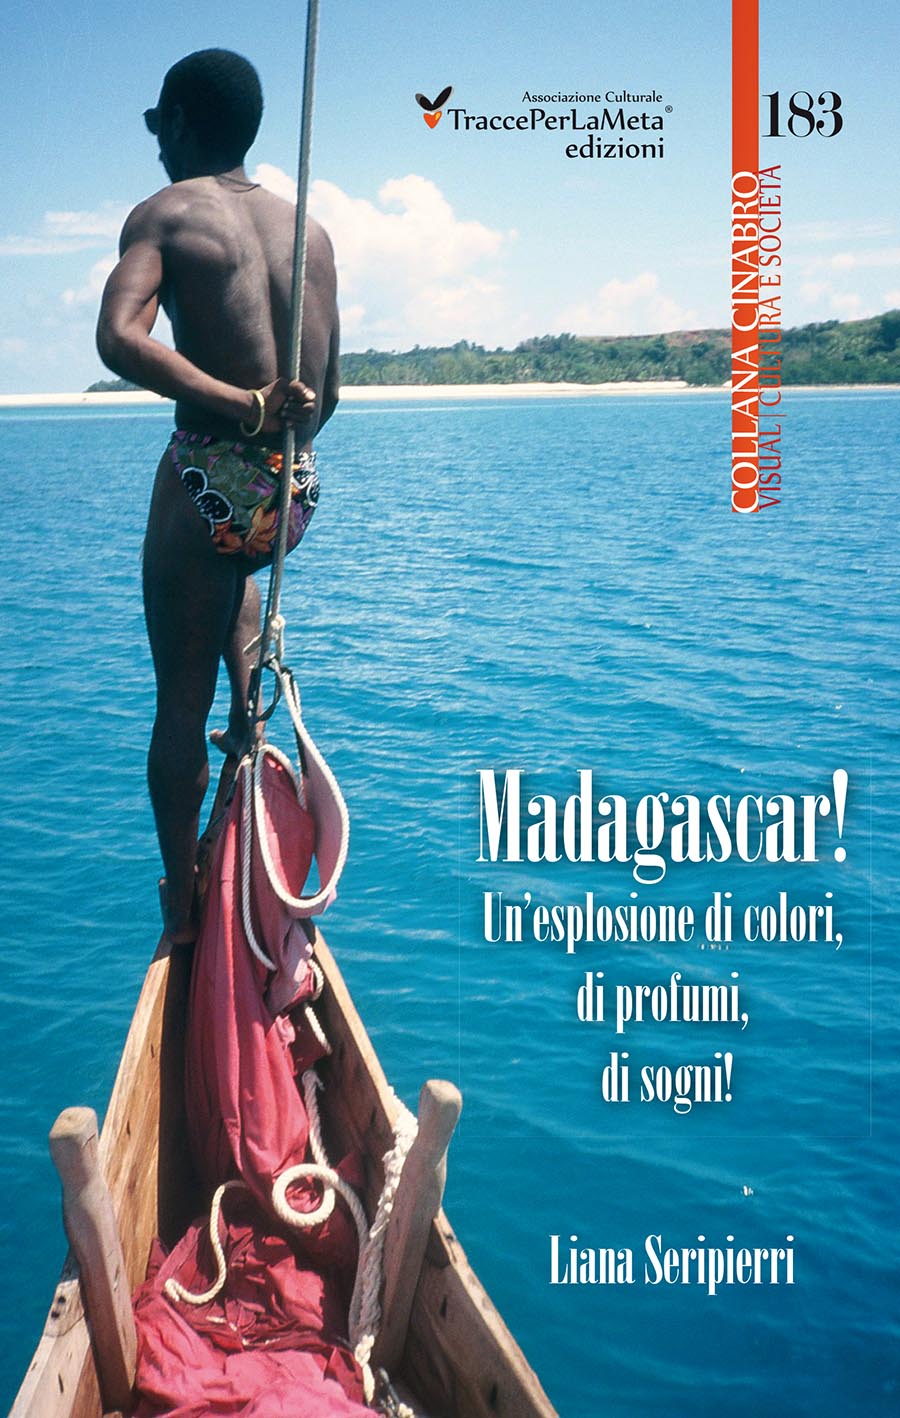 Un viaggio dai contorni fiabeschi; esce “Madagascar! Un’esplosione di colori, di profumi, di sogni!” di Liana Seripierri